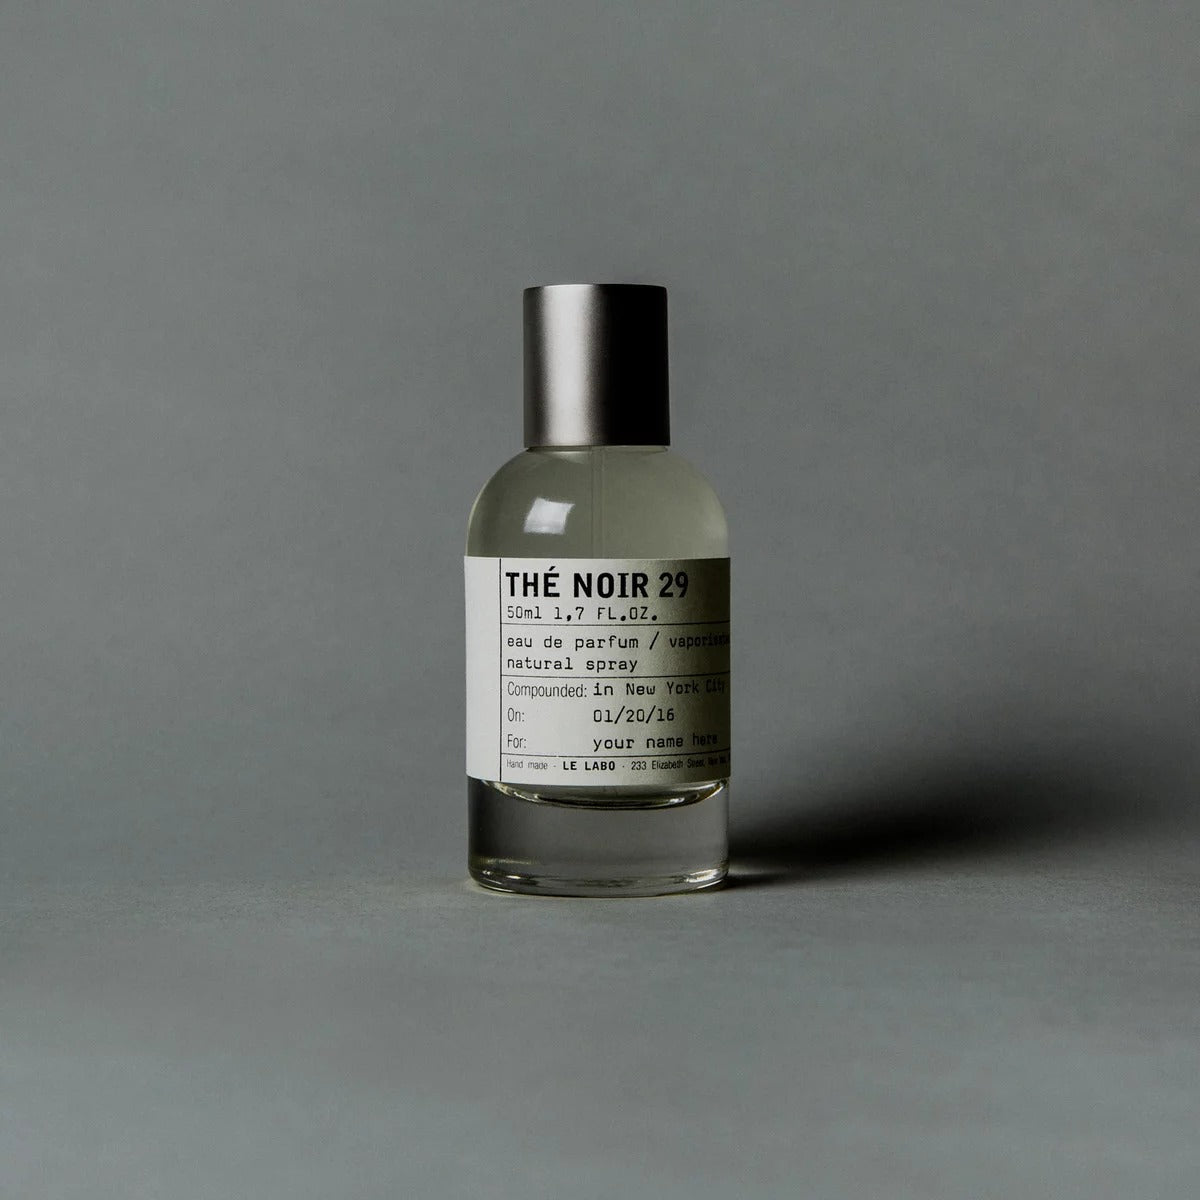 Le Labo The Noir 29 - Maison de Parfum Albania